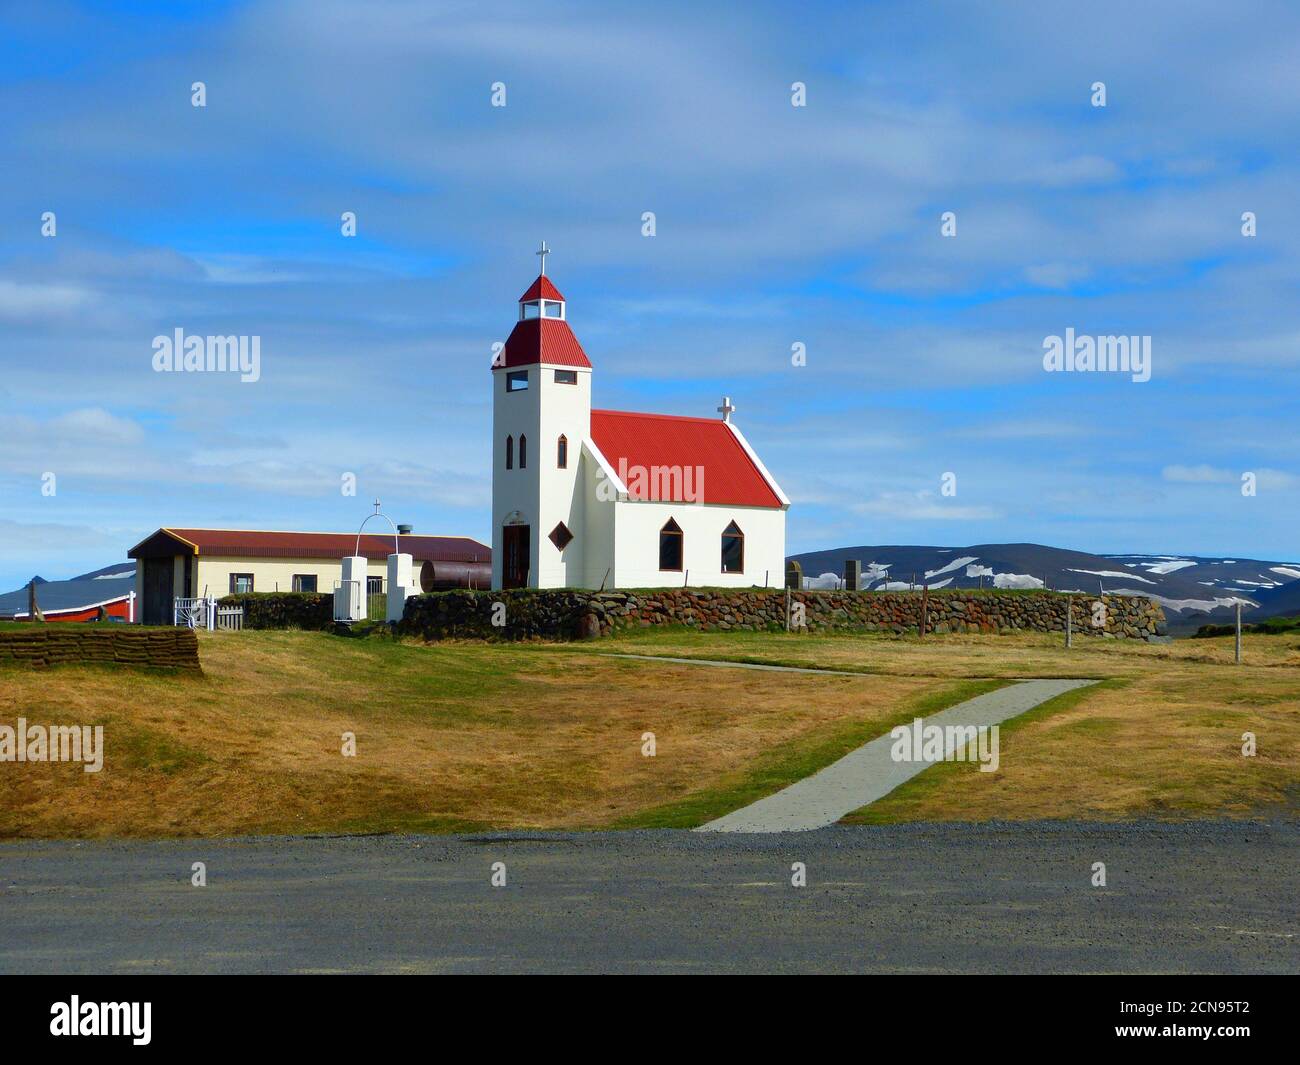 Paesaggio islandese idilliaco e tranquillo. Vista sulla bella chiesa cristiana rurale. Modrubalur è un villaggio situato nella natura selvaggia dell'Islanda. Luogo tranquillo Foto Stock